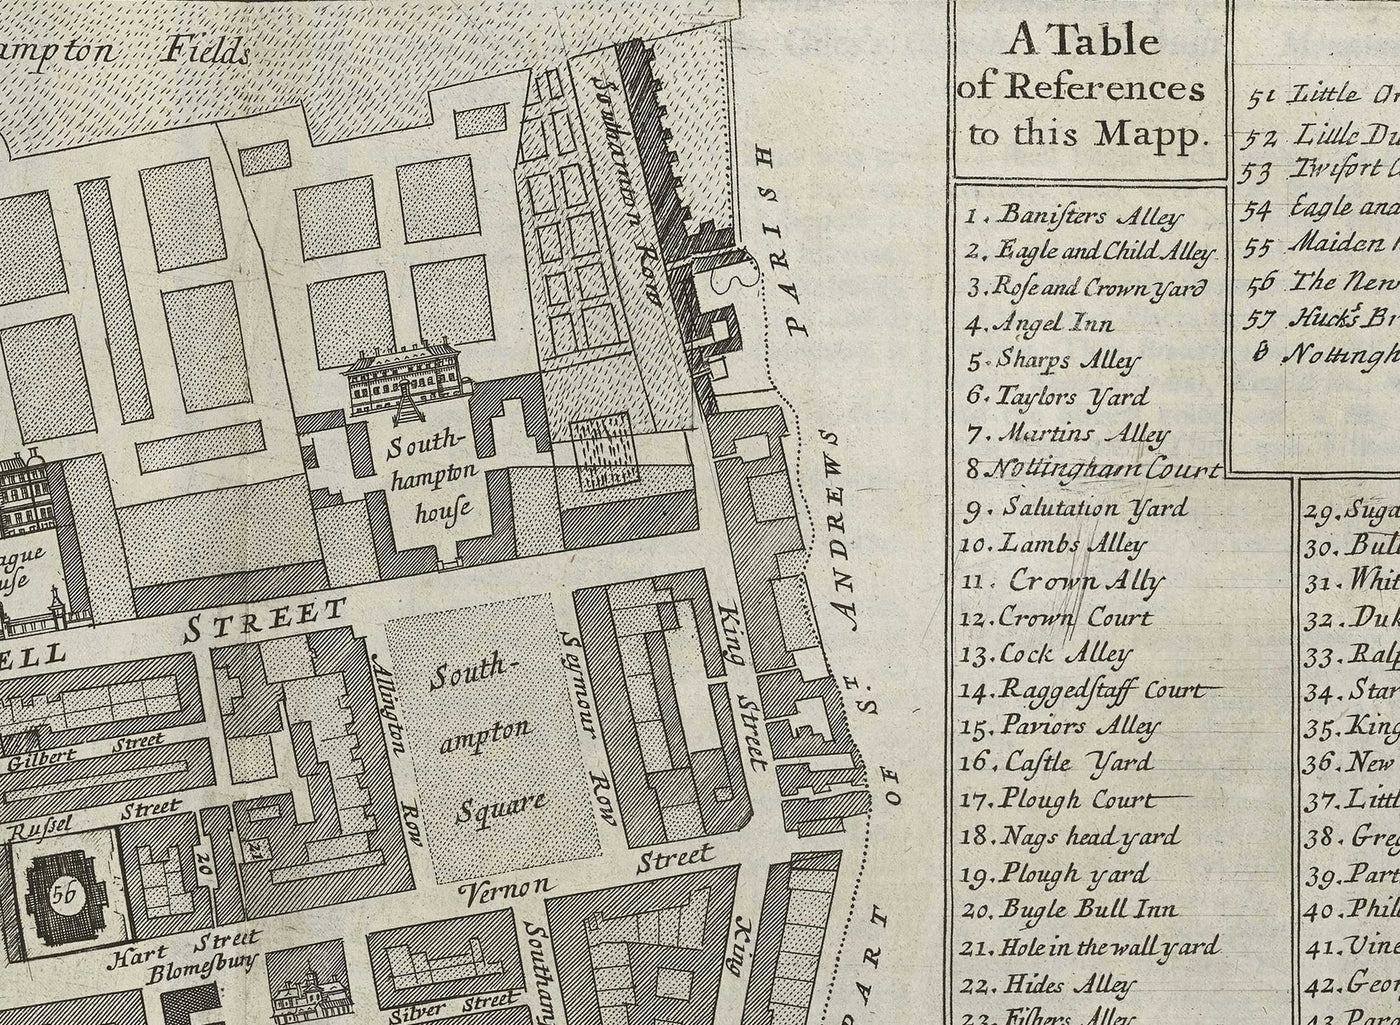 Alte Karte von London St. Giles im Jahr 1720 von John Strype und John Stow - Great Russell Street, Lincoln's Inn Fields, High Holborn, Drury Lane